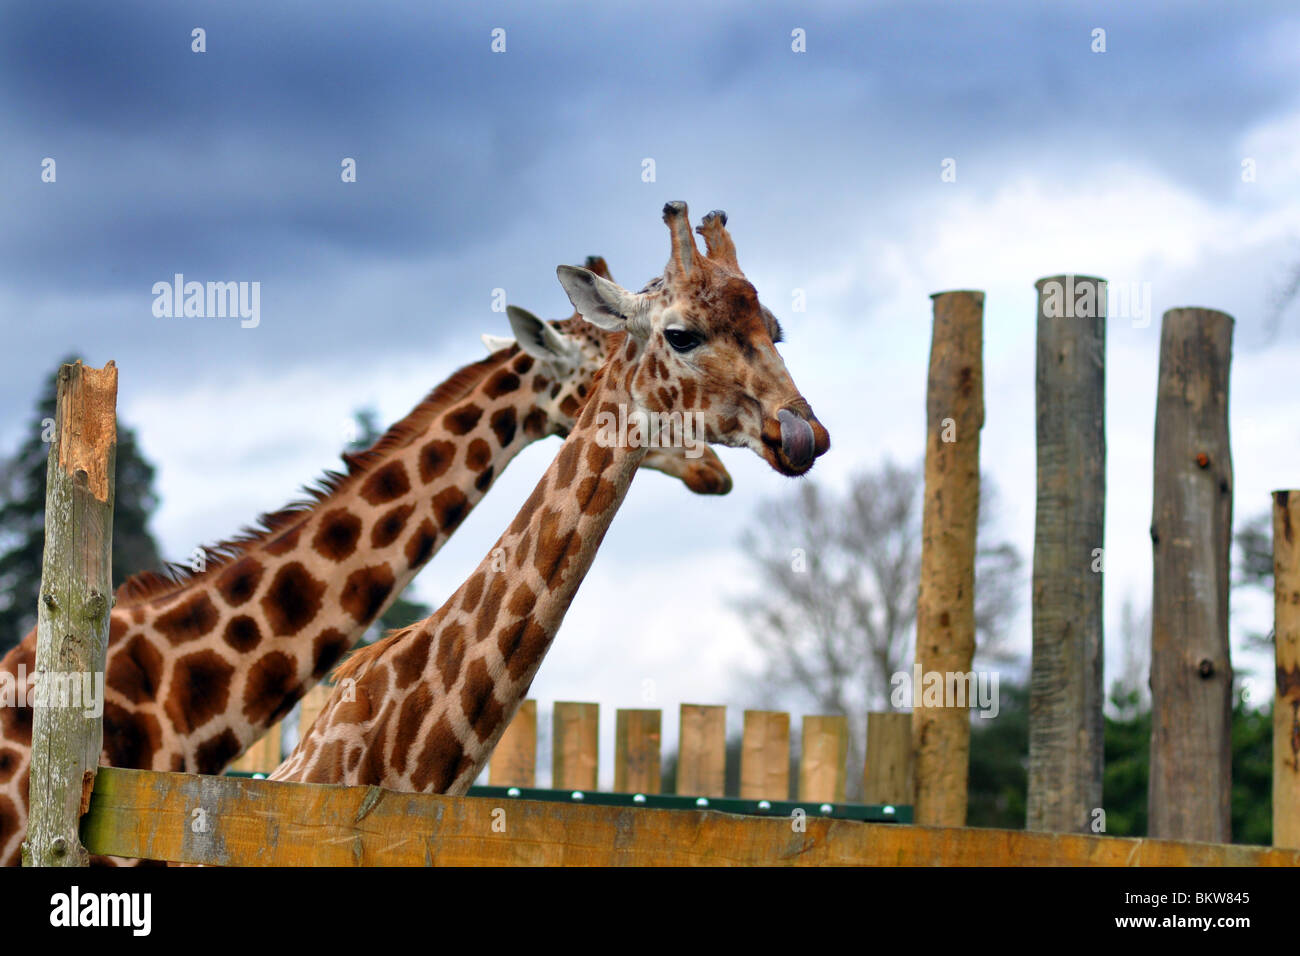 Deux girafes dans un zoo, Ecosse, Royaume-Uni Banque D'Images